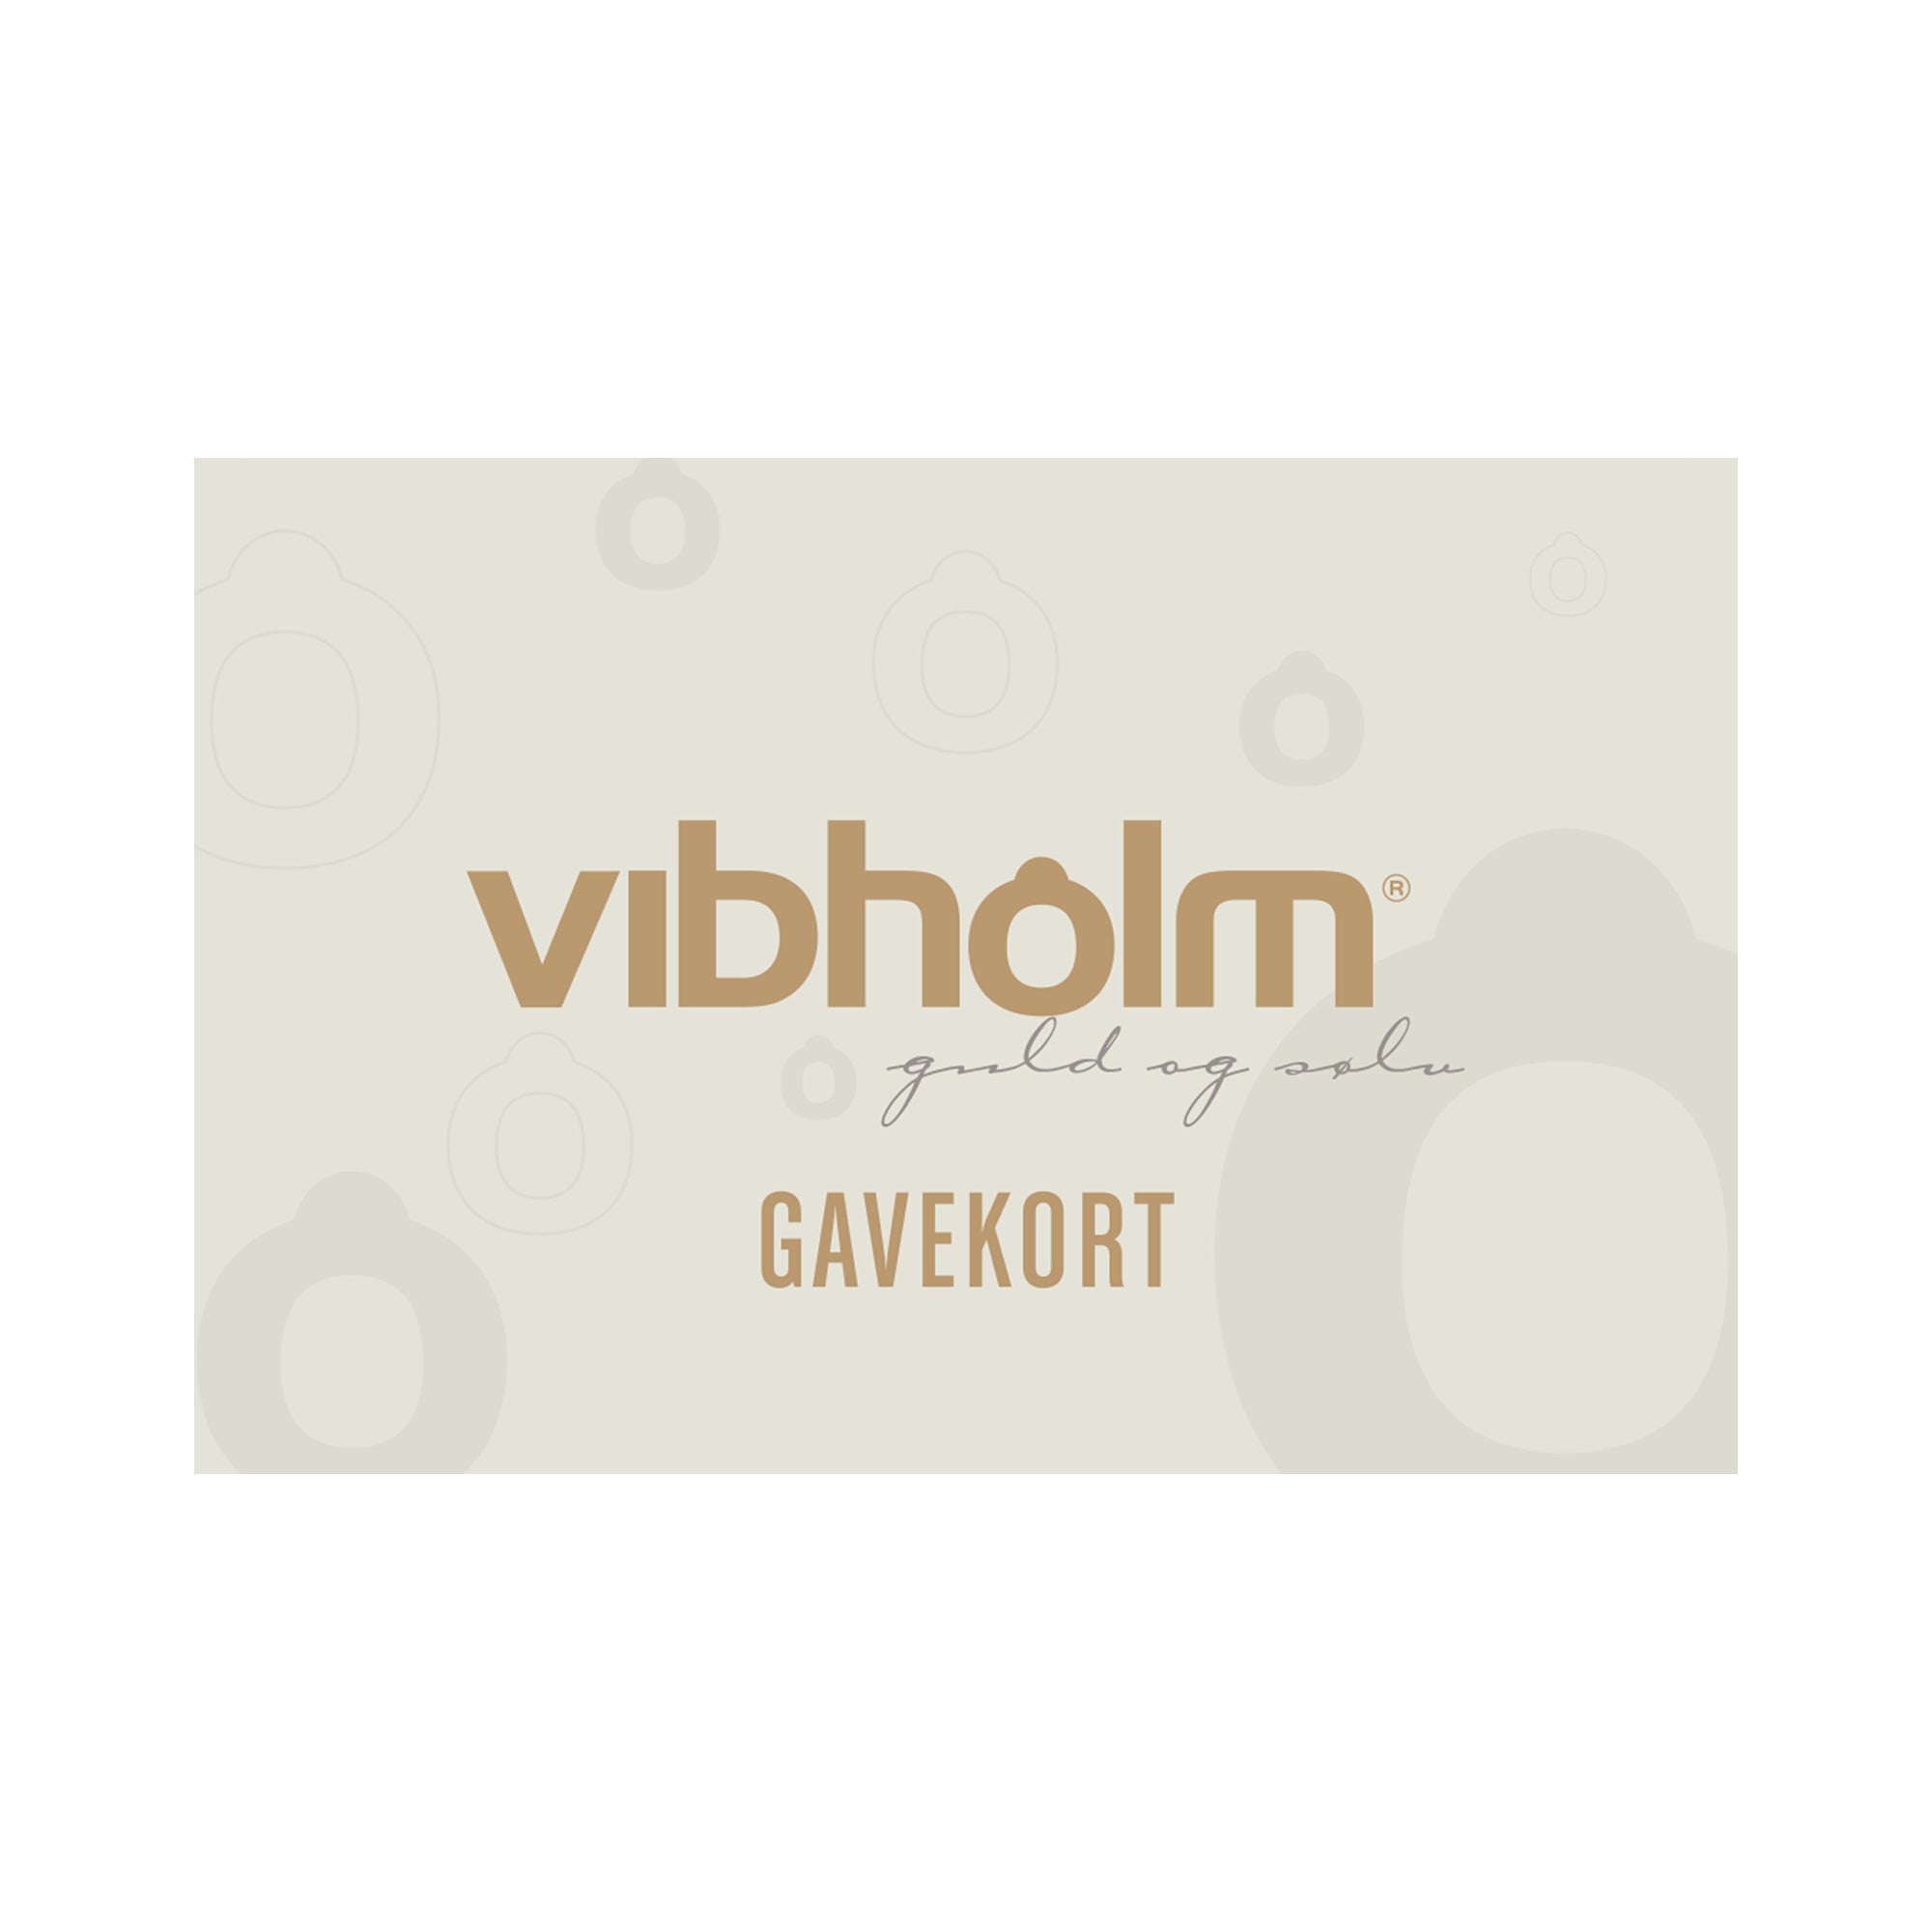 Se Vibholm gavekort til hul i ørerne 2 huller 399 kr. hos Vibholm.dk